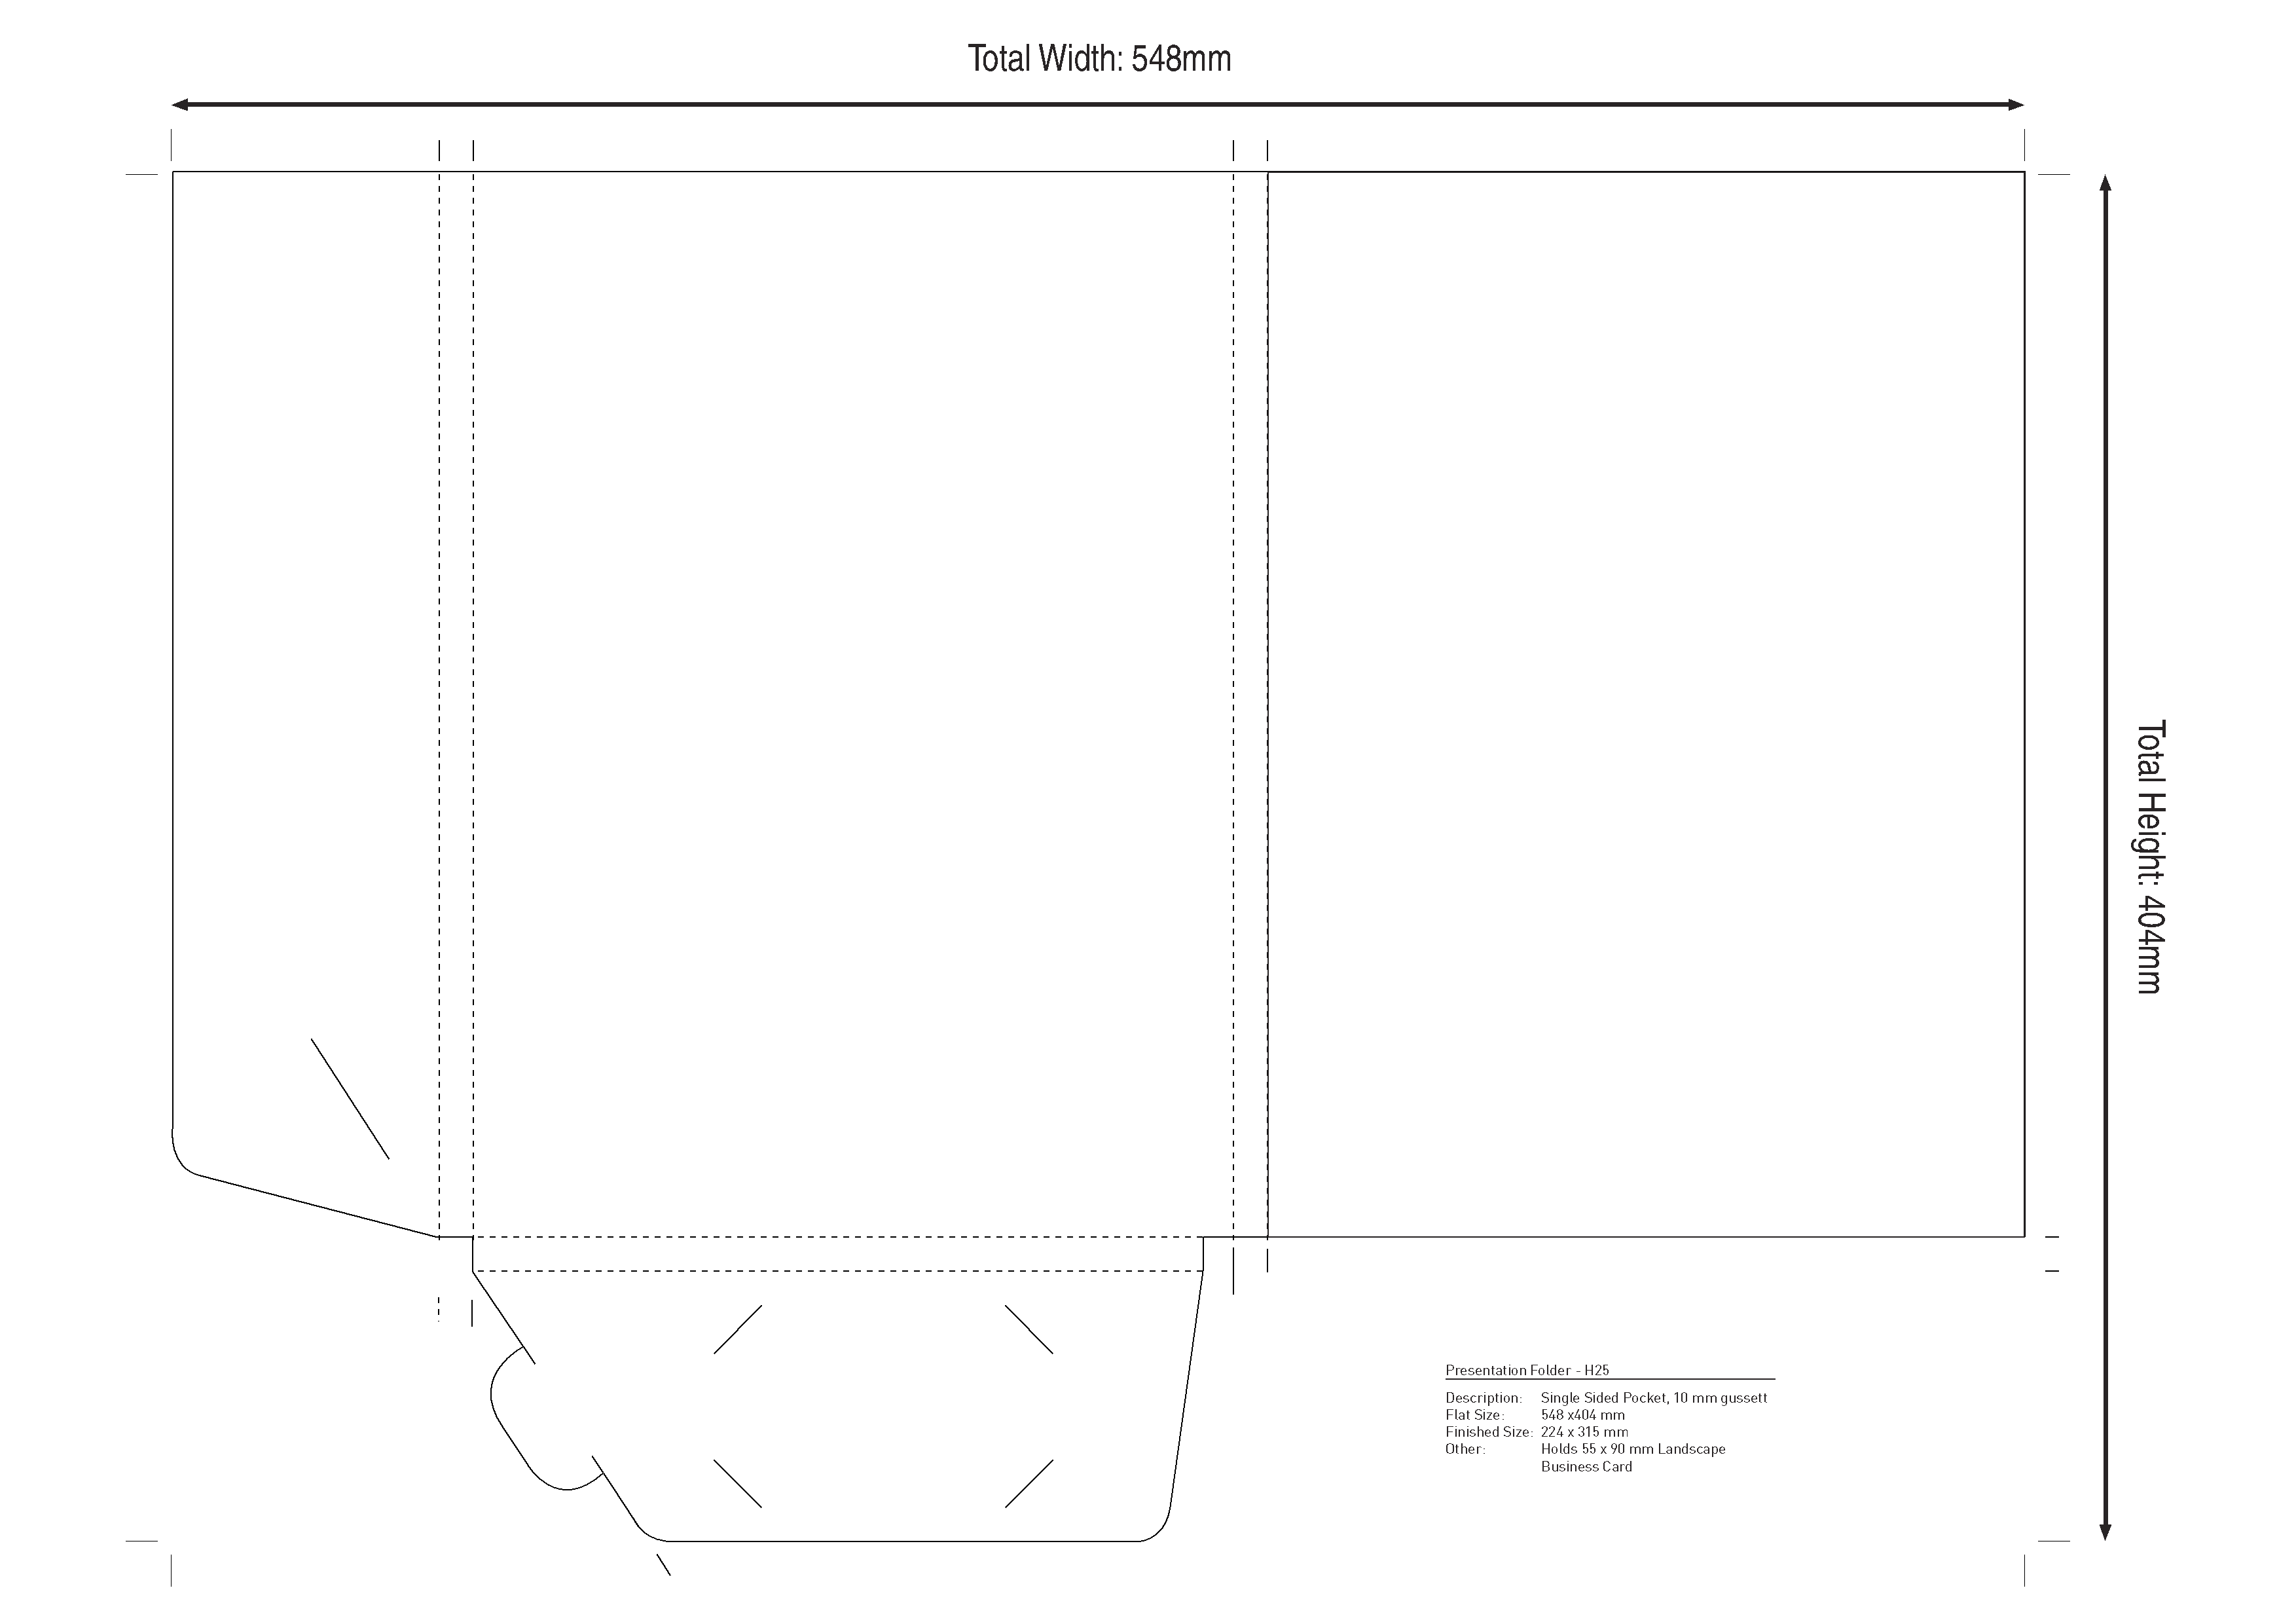 Presentation Folder: 10mm gusset Landscape business card